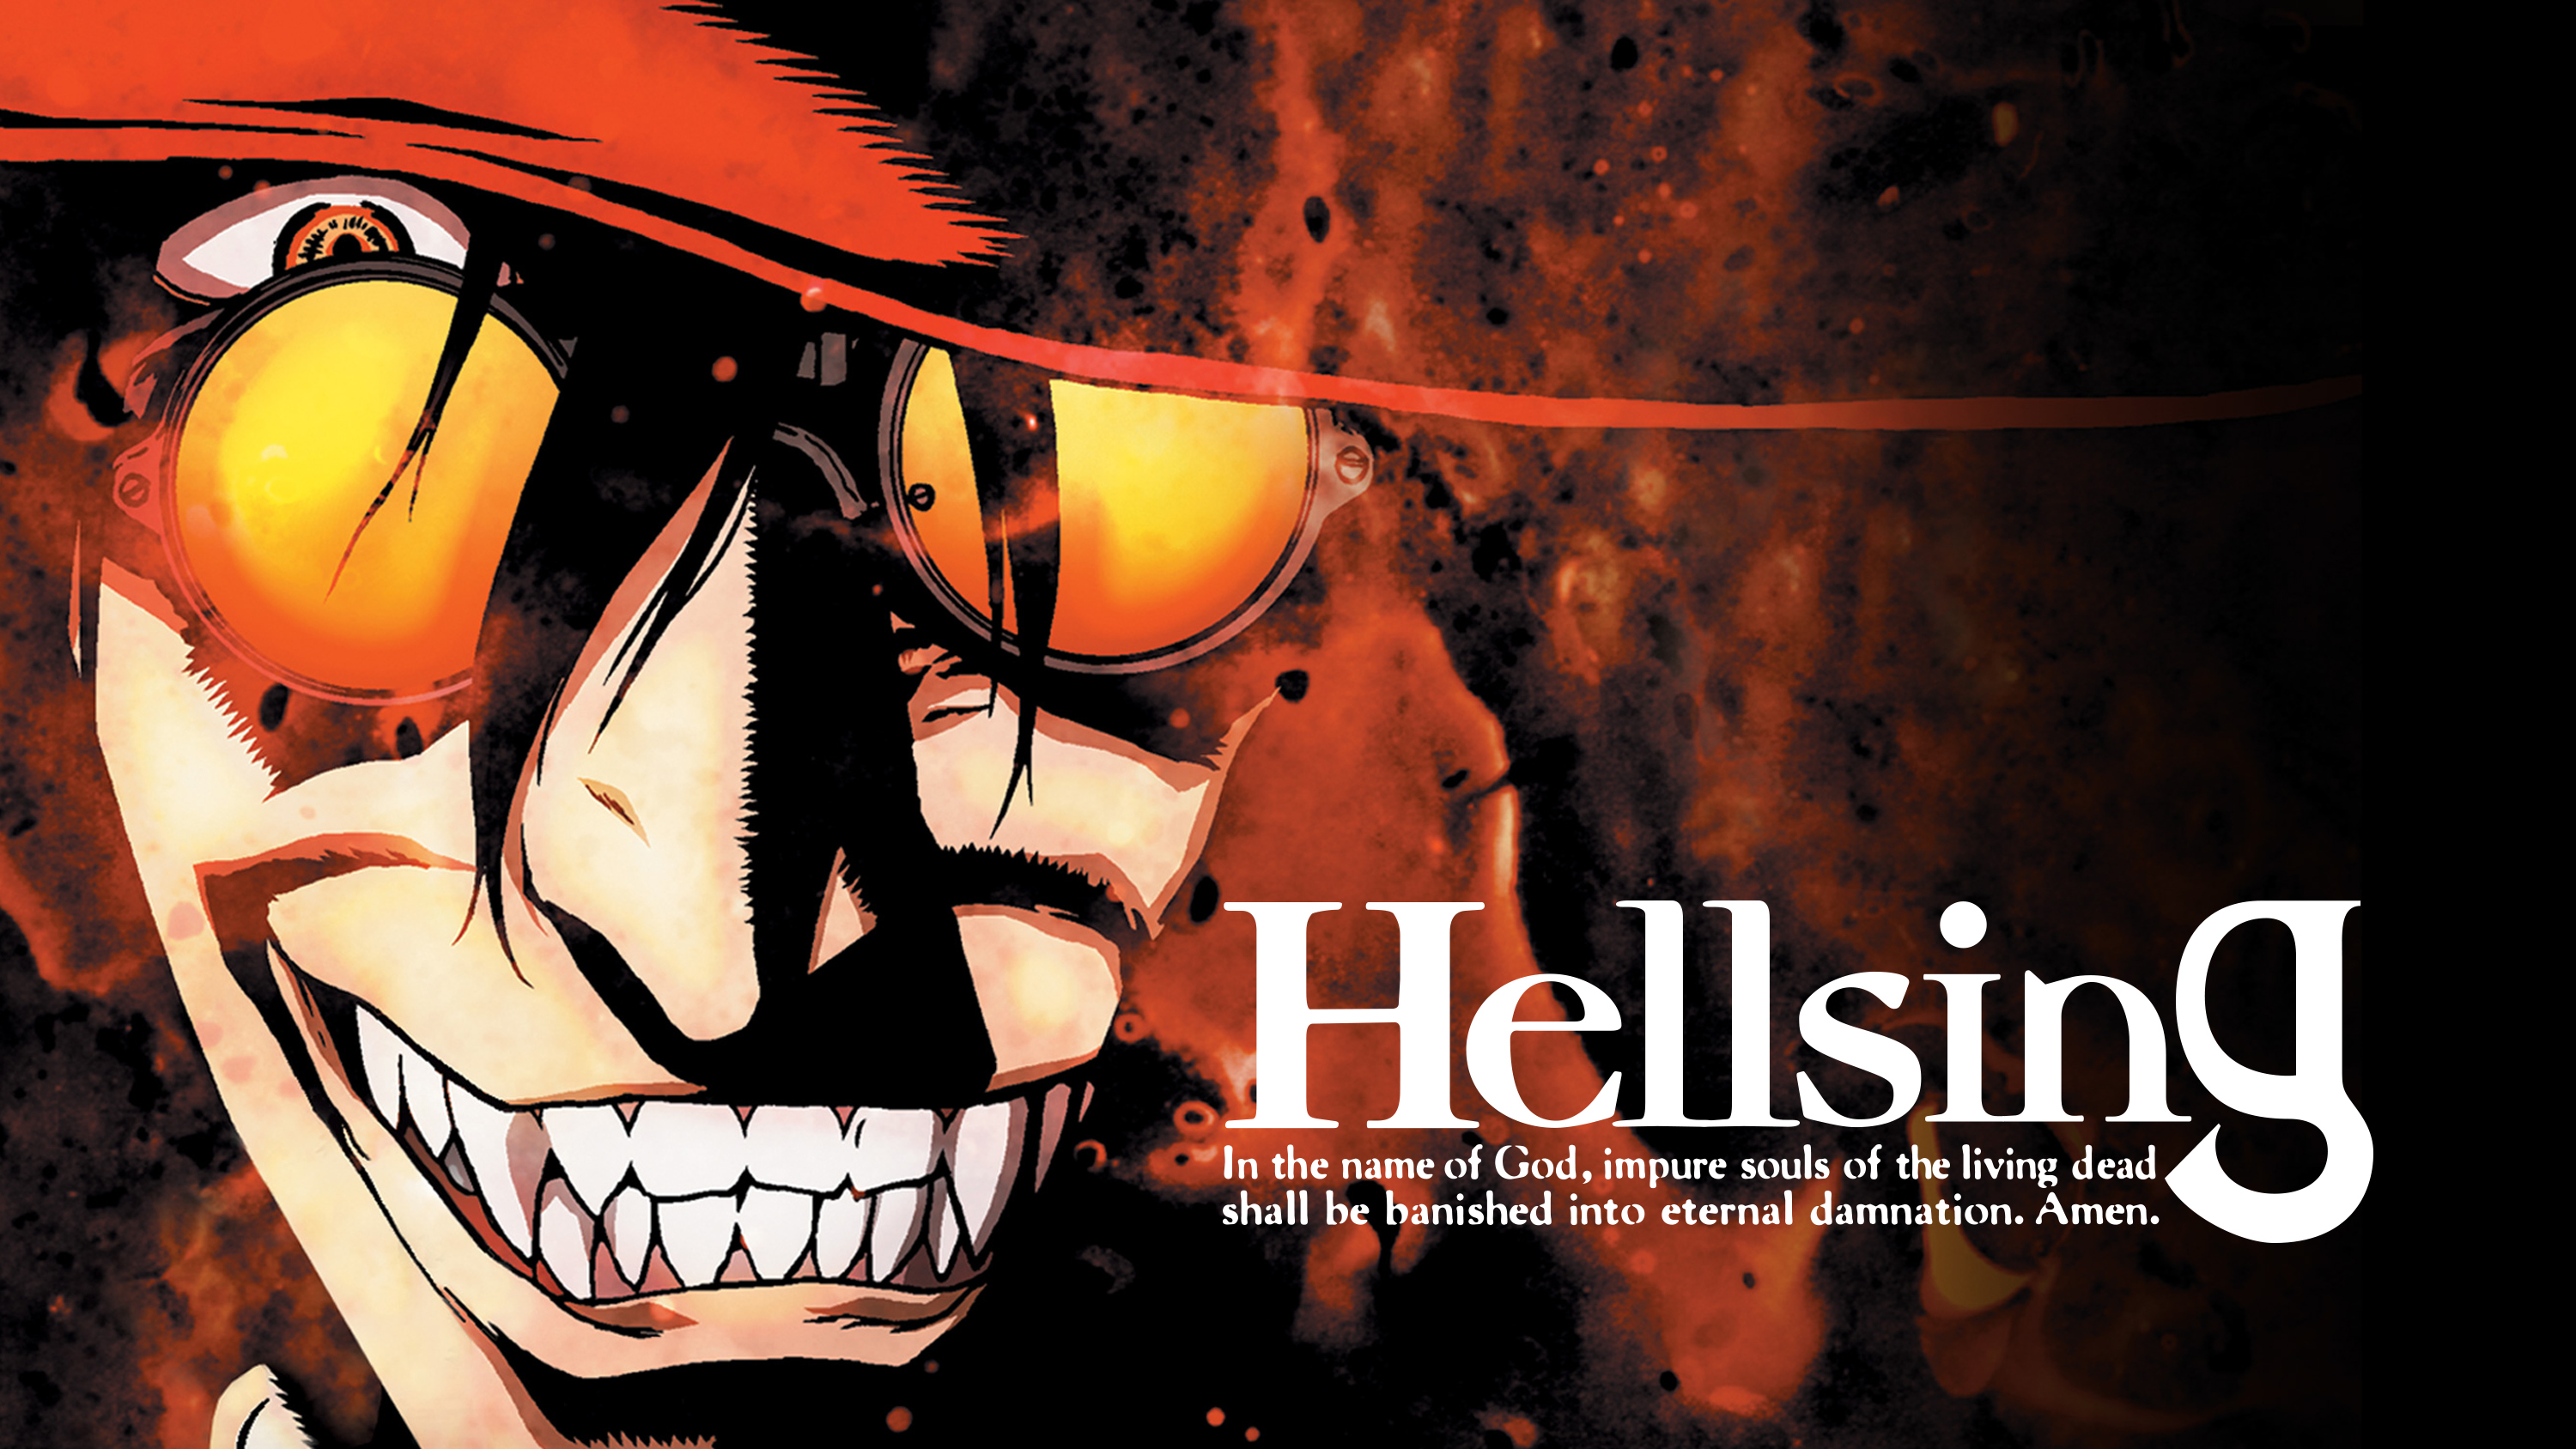 Papeis de parede Hellsing Anime baixar imagens